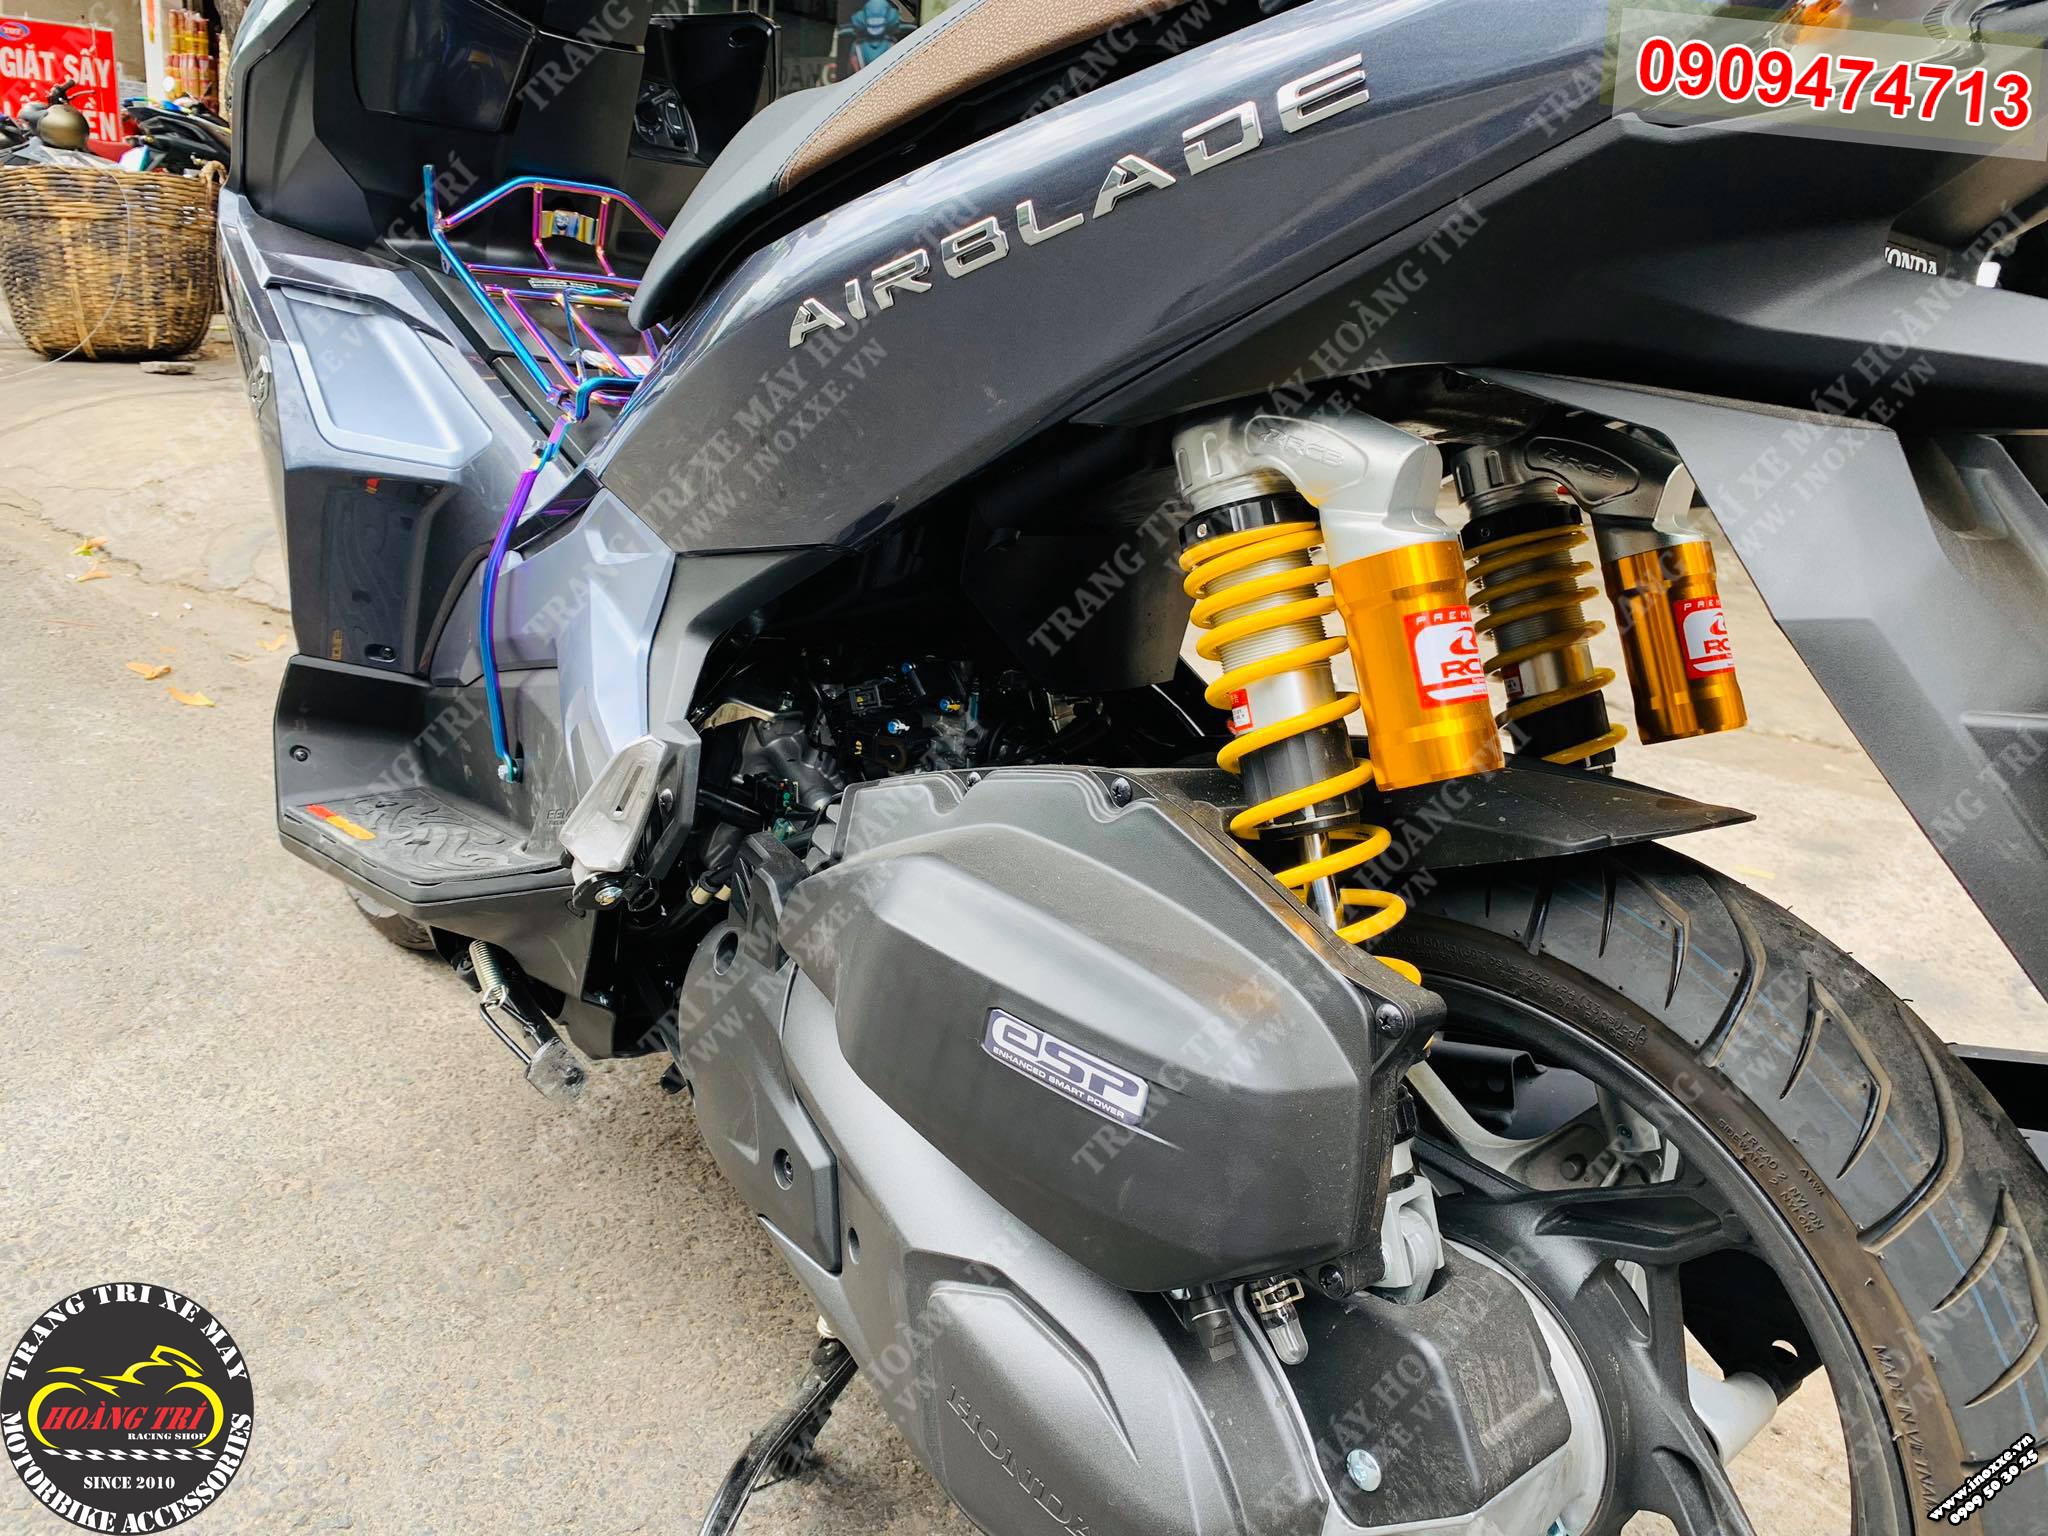 Phuộc bình dầu Racing Boy cho xe AirBlade - mẫu VS ti phuộc trắng